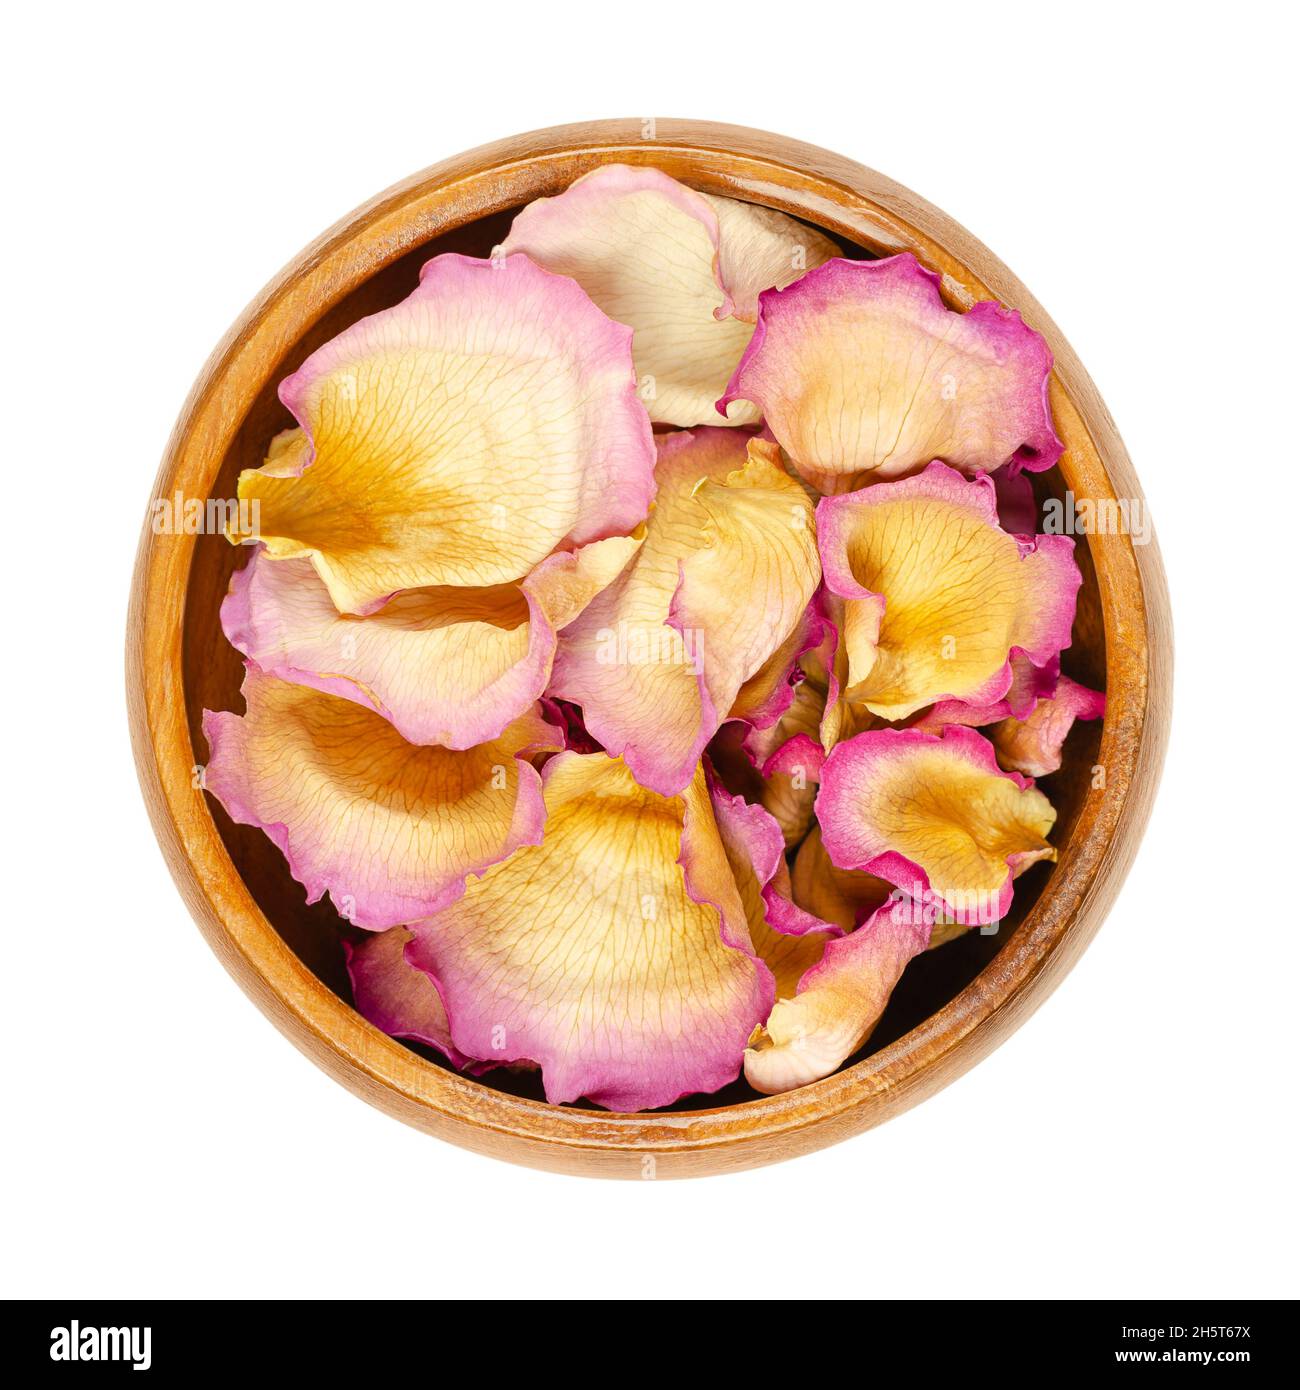 Petali di rosa interi essiccati in una ciotola di legno. Petali di una rosa giardino di colore rosa chiaro, chiamata Cina, cinese o rosa bengala. Rosa chinensis. Foto Stock